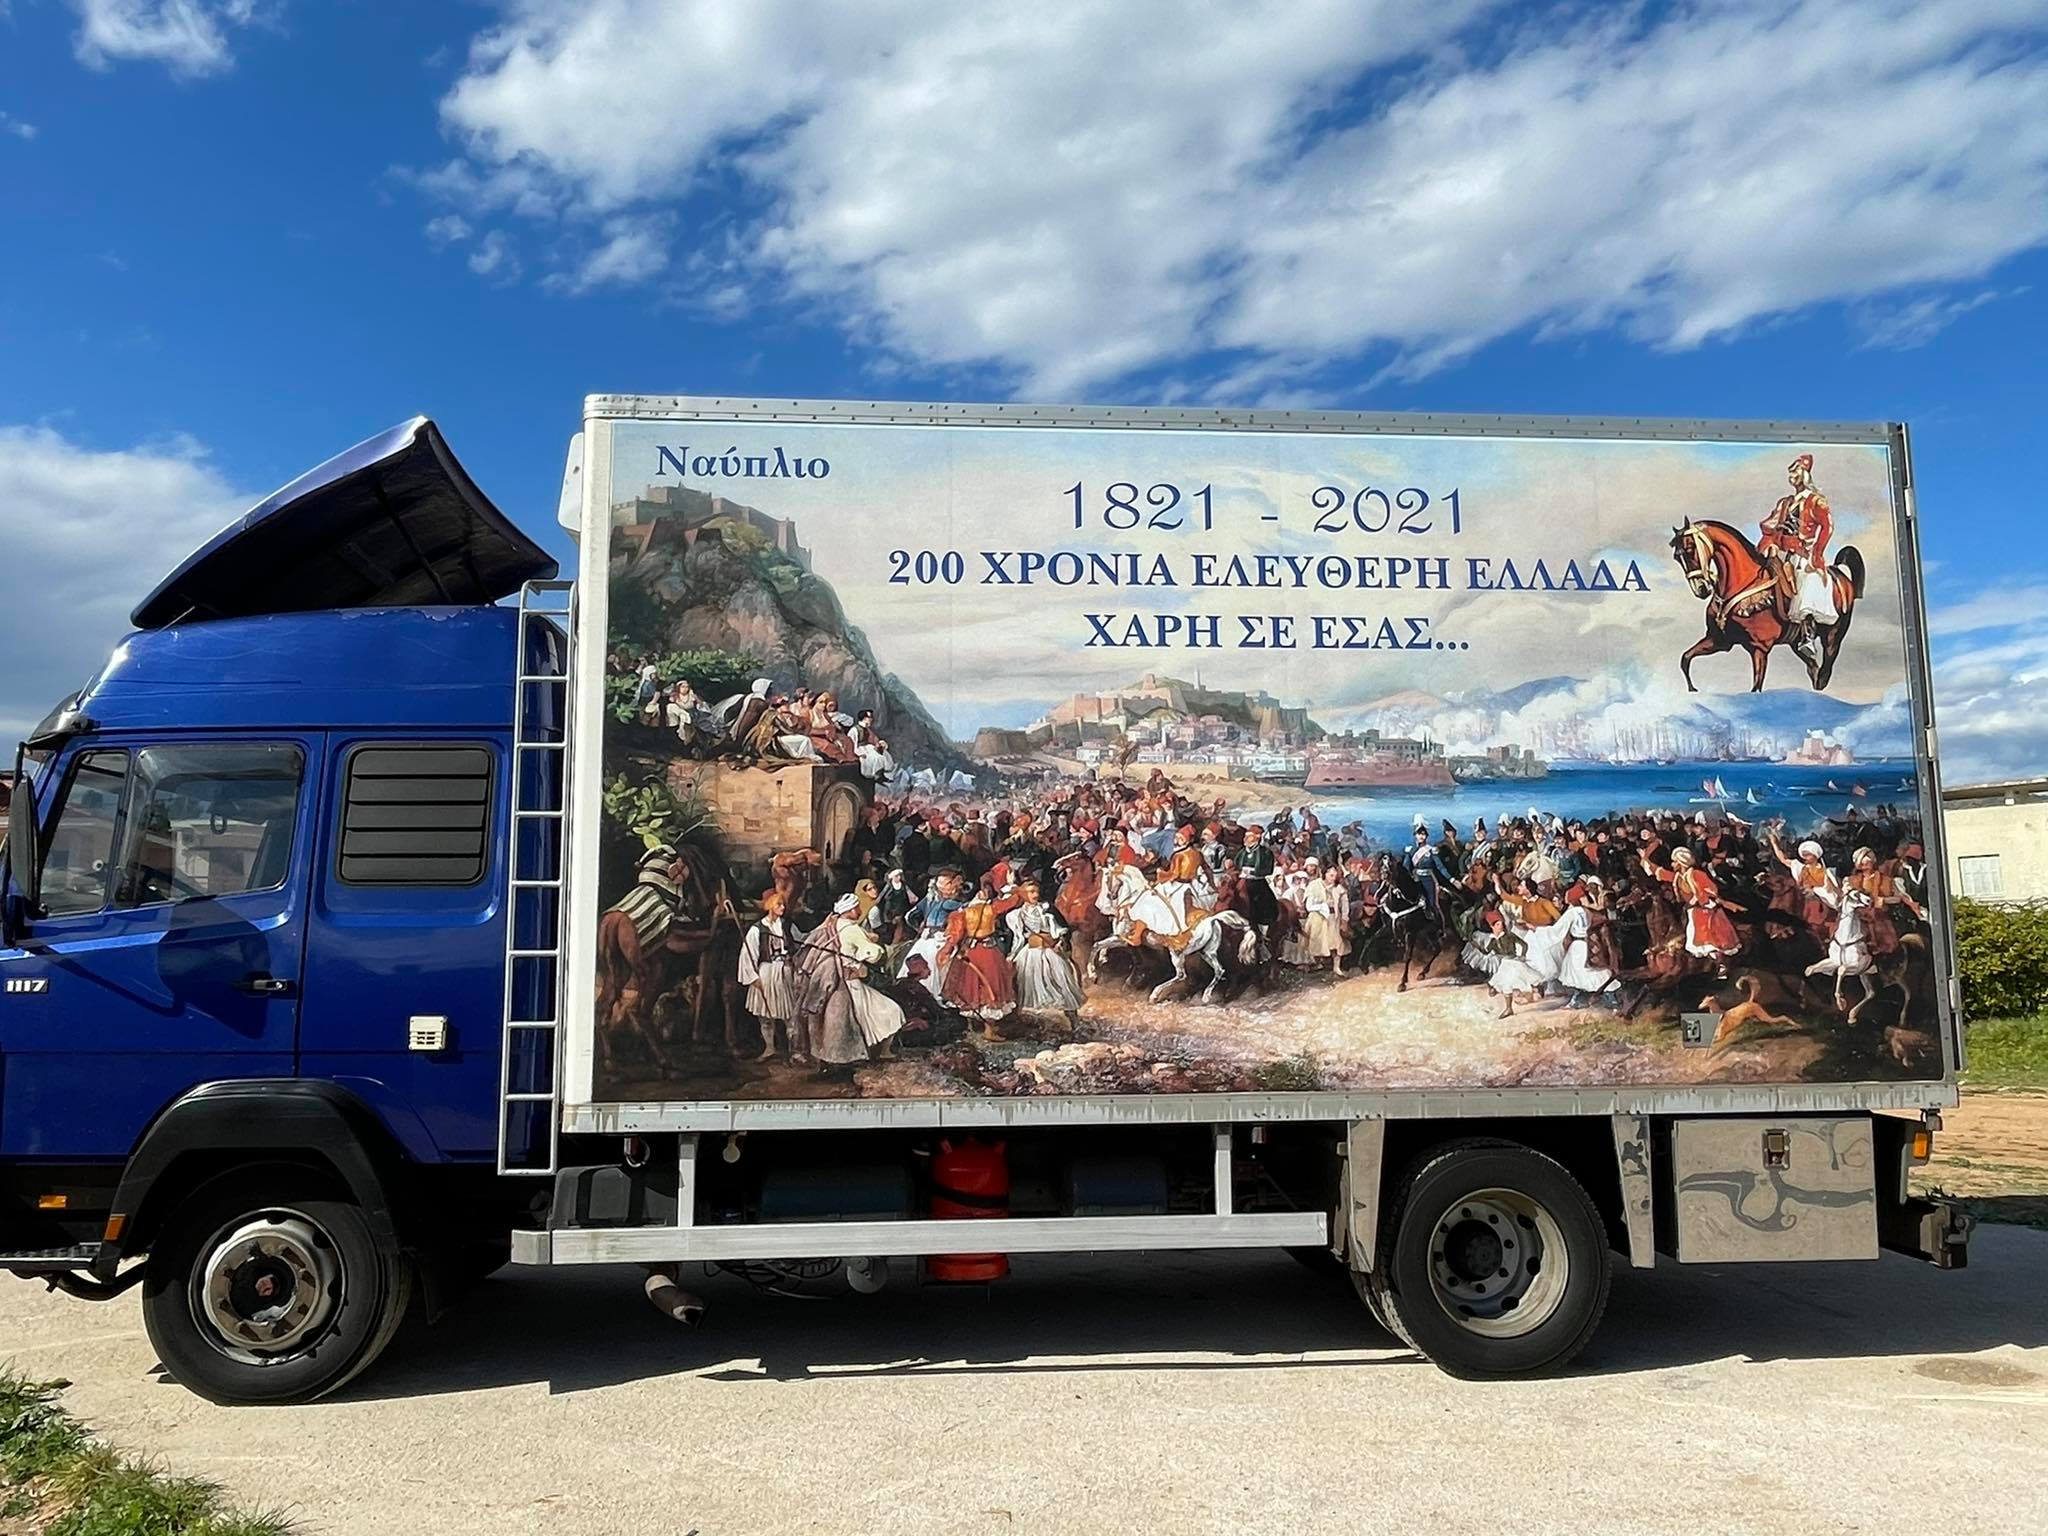 Εντυπωσιακό! Οι ήρωες του 1821 με φόντο το Ναύπλιο σε τριαξονικό φορτηγό (Εικόνες)